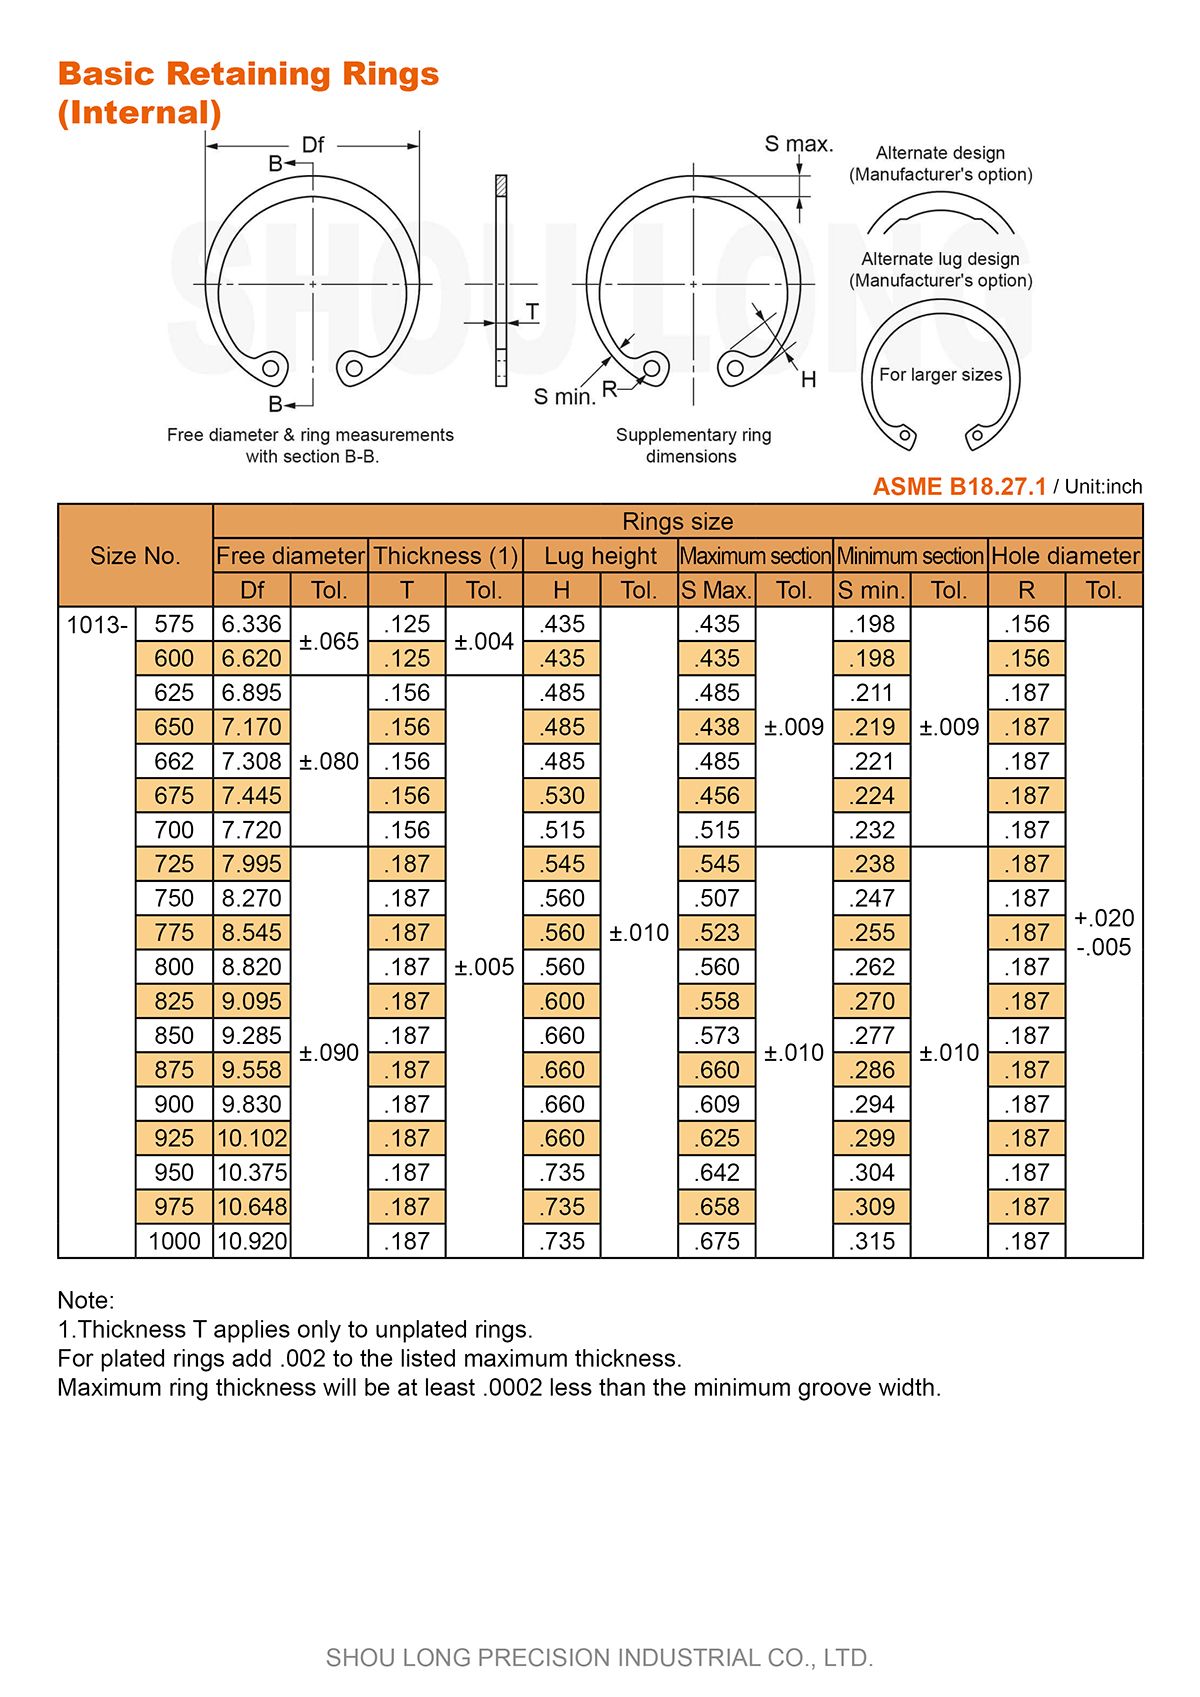 Especificación de Anillos de Retención Básicos en Pulgadas para Agujeros ASME/ANSI B18.27.1-4